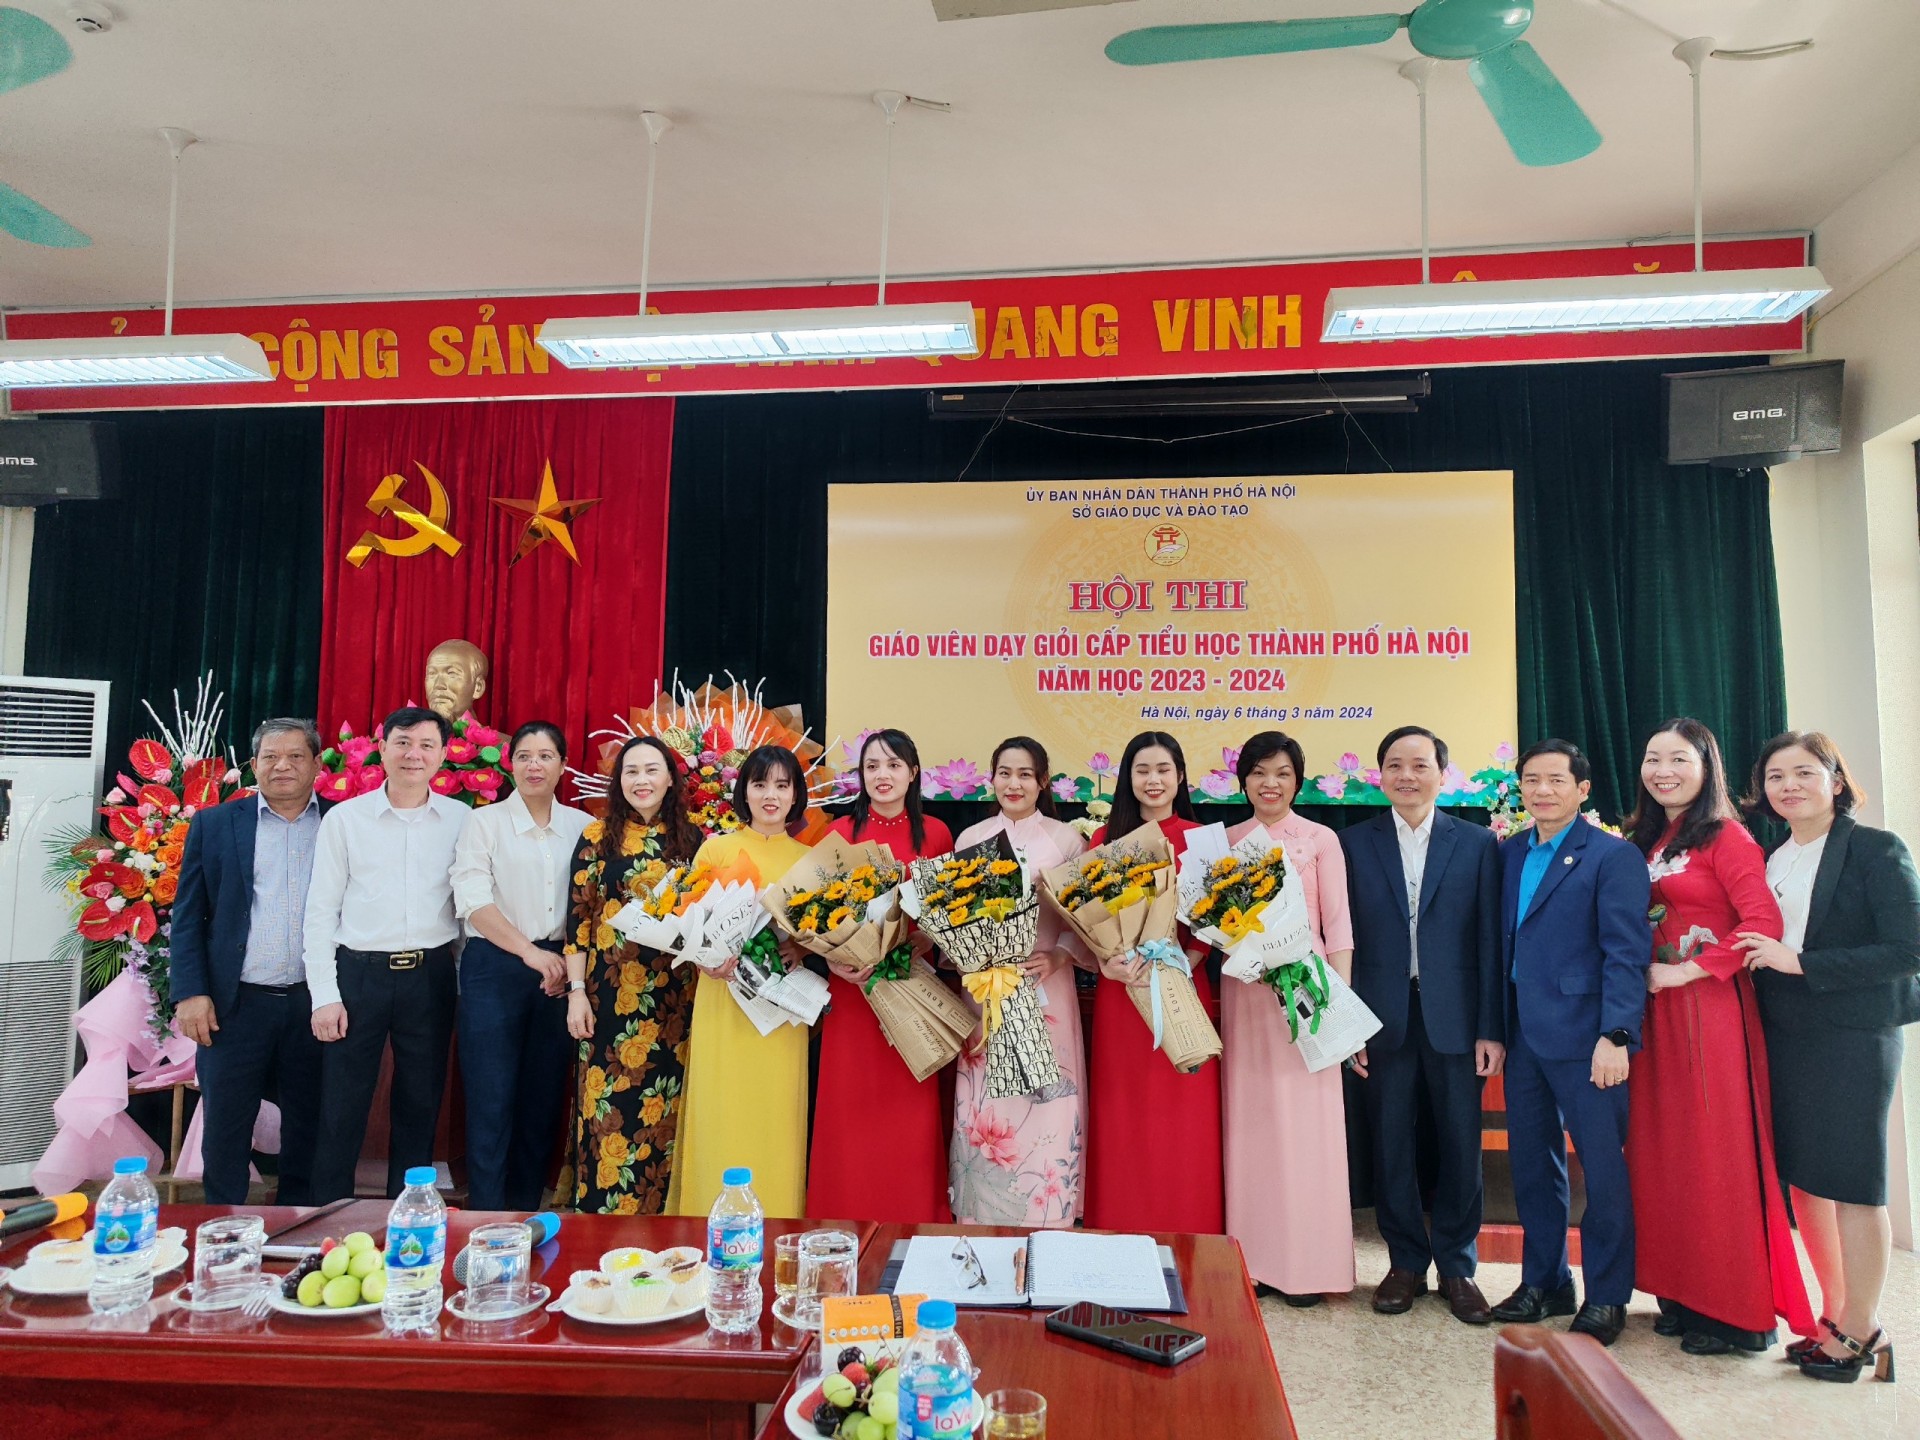 Sở Giáo dục và đào tạo Thành phố Hà Nội tổ chức khai mạc hội thi 

giáo viên giỏi cấp Tiểu học trên địa bàn huyện Hoài Đức